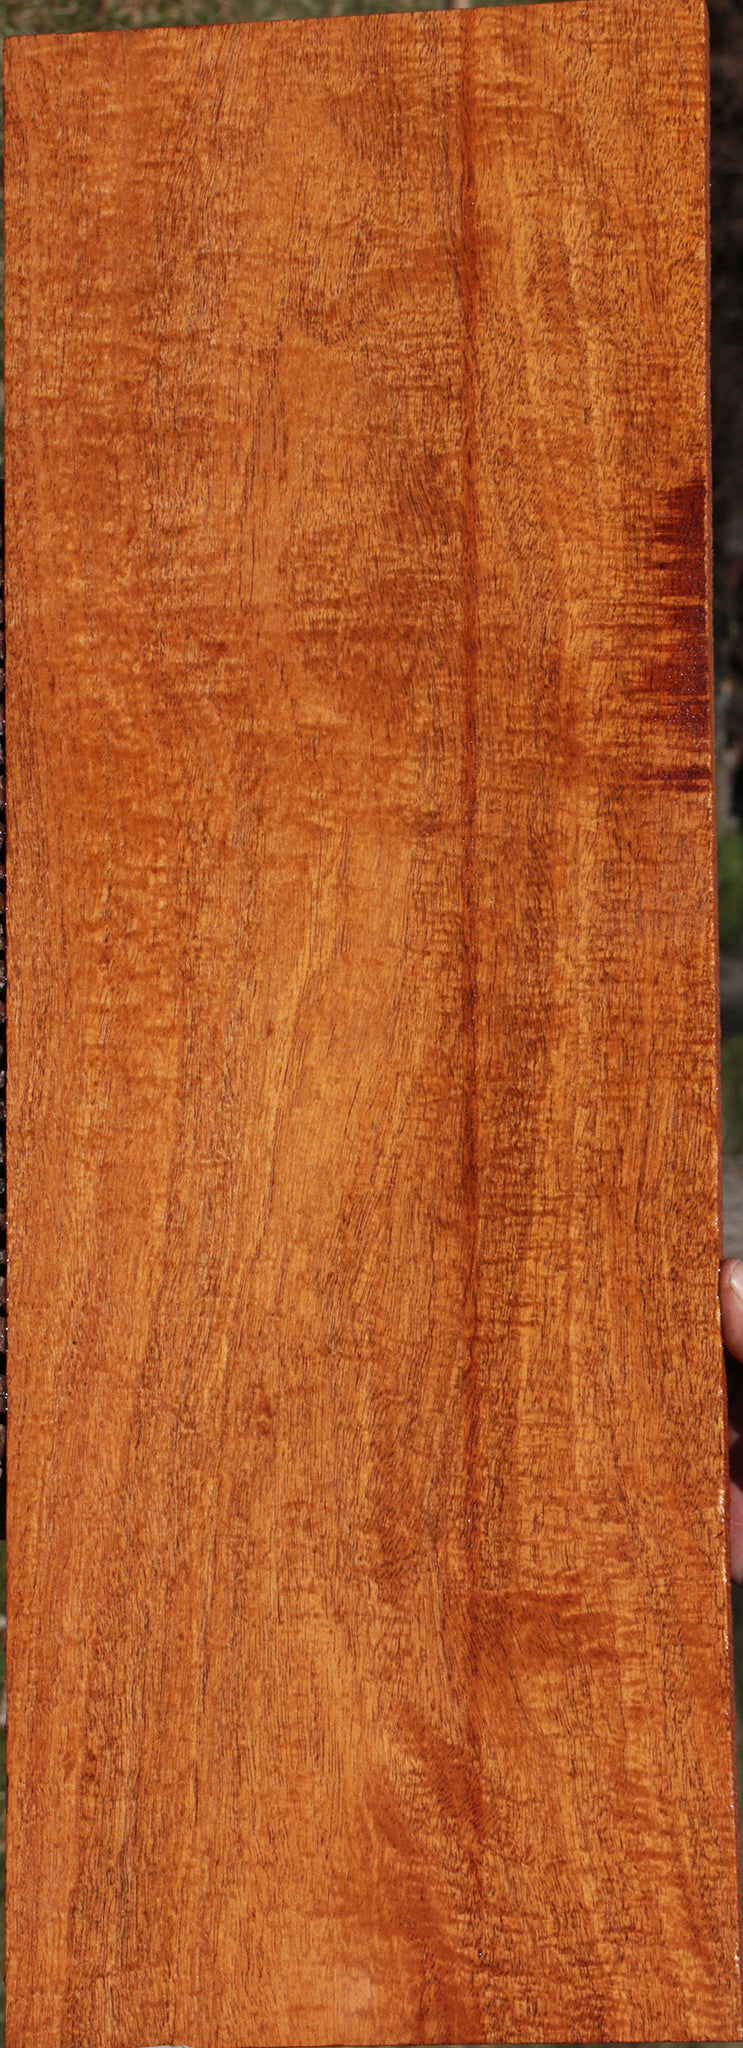 Extra Fancy Honduras Mahogany Lumber